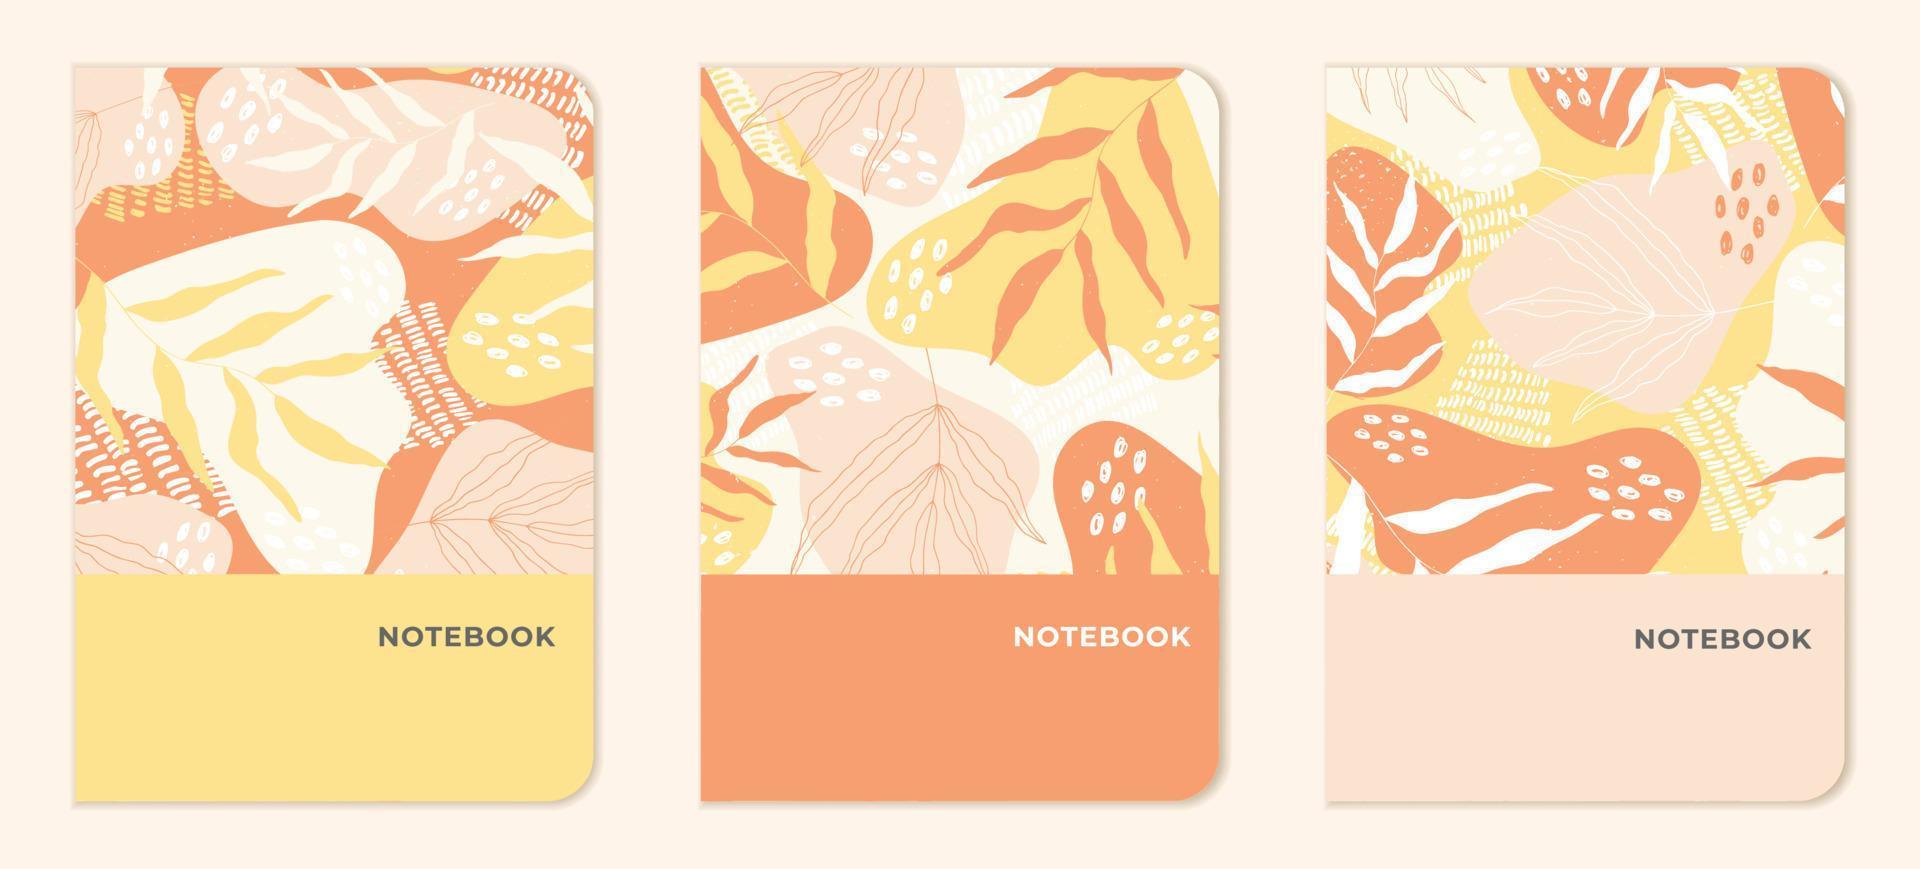 abstracte sjablonen met bladeren in gele, perzik- en oranje tinten voor blocnotes, planners, brochures, boeken, catalogi. vector. vector